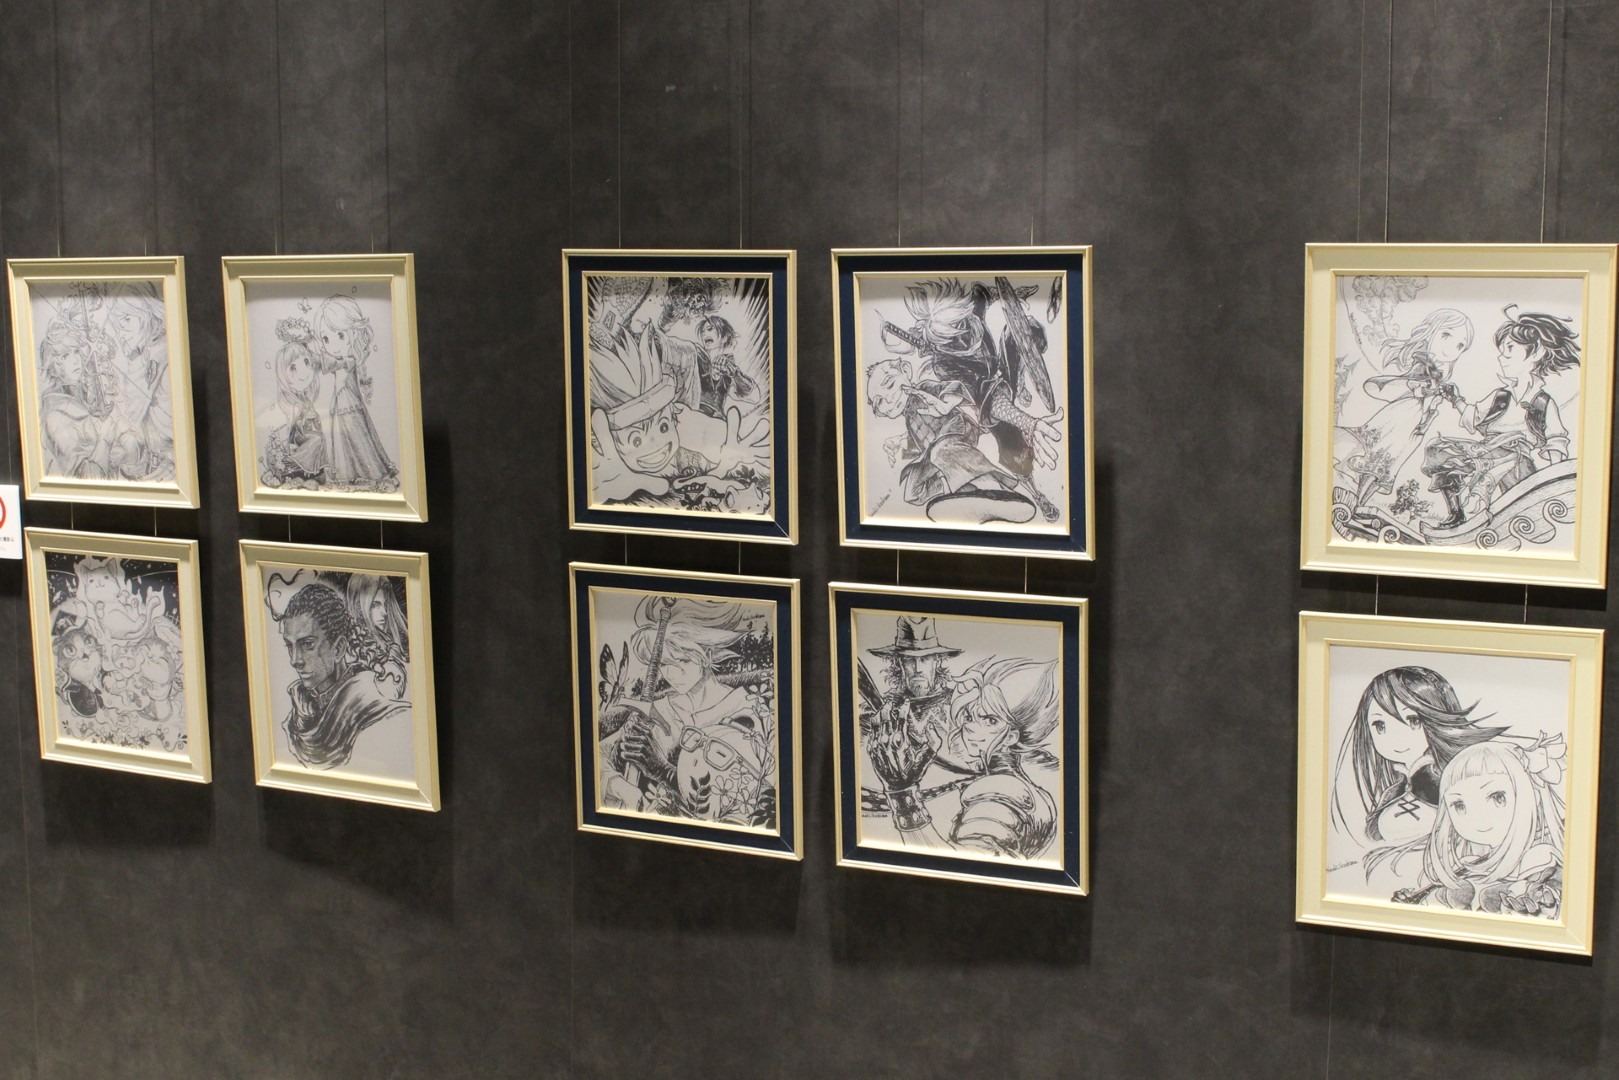 日本《Bravely Default》10 周年记念展现场报导展示超过两百张以上插图原画插图62